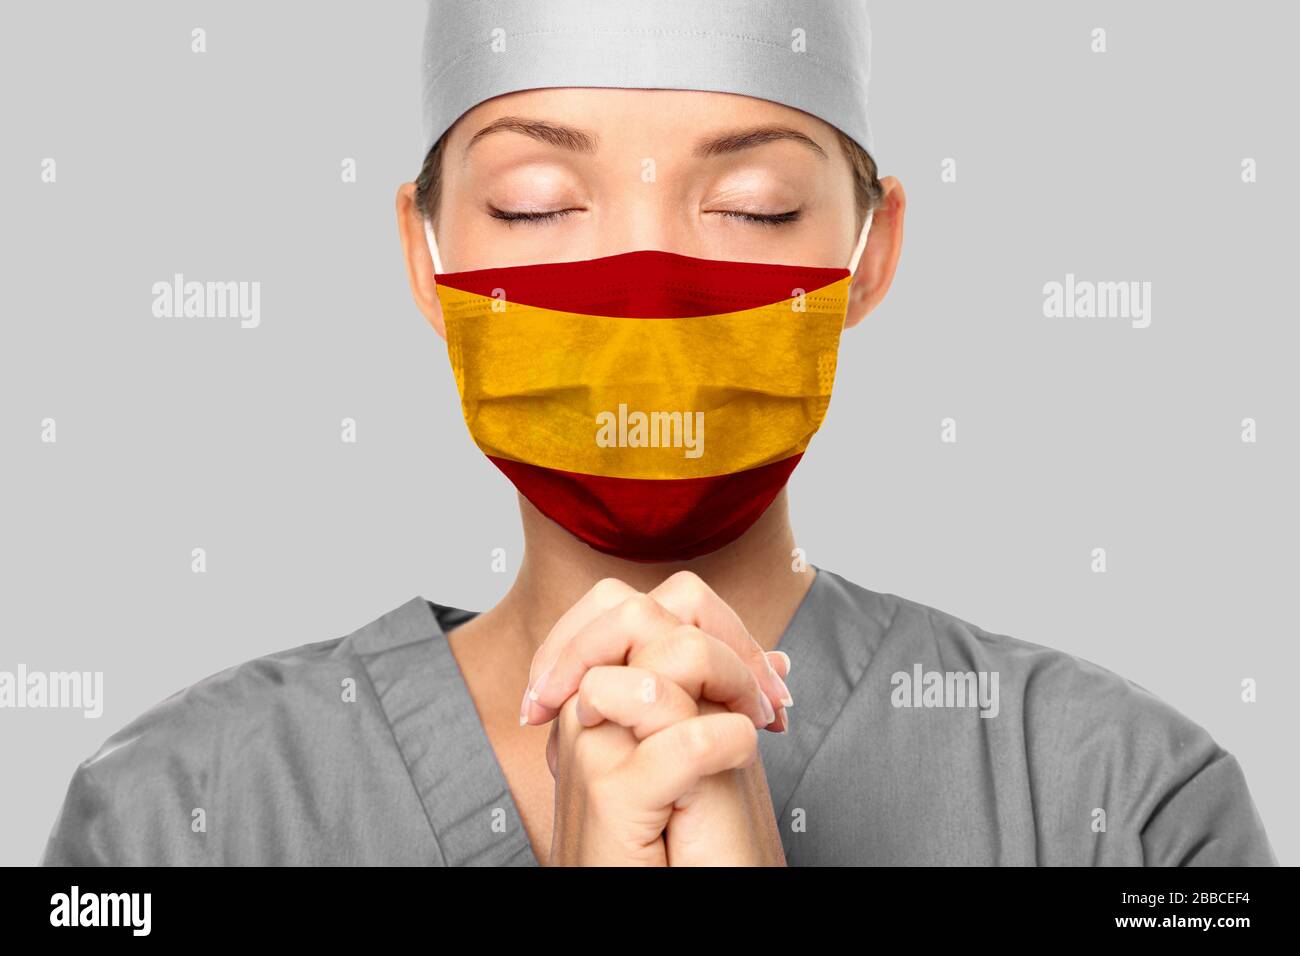 COVID-Ausbruch in Spanien asiatischer Arzt mit spanischem Flaggendruck auf der Operationsmaske, der um Hilfe betet. Junge Frau Krankenschwester betend. Coronavirus-Pandemie in Spanien. Stockfoto